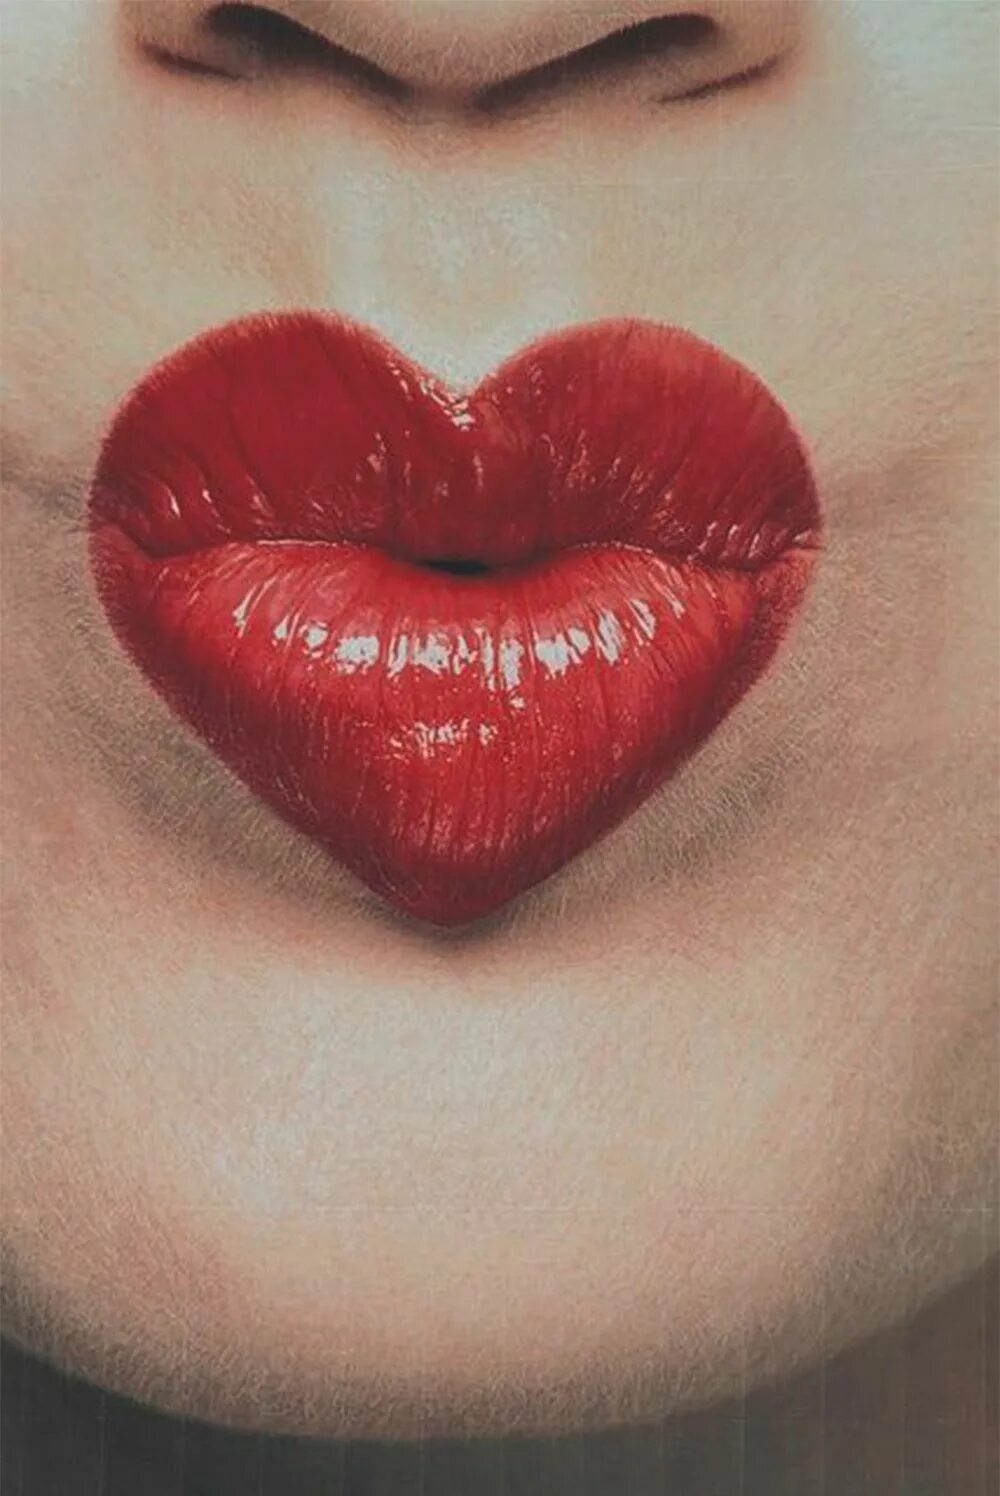 Поцелуй в губы. Губы сердечком. Красивые губы. Красивый поцелуй в губы. Дай поцелую губы